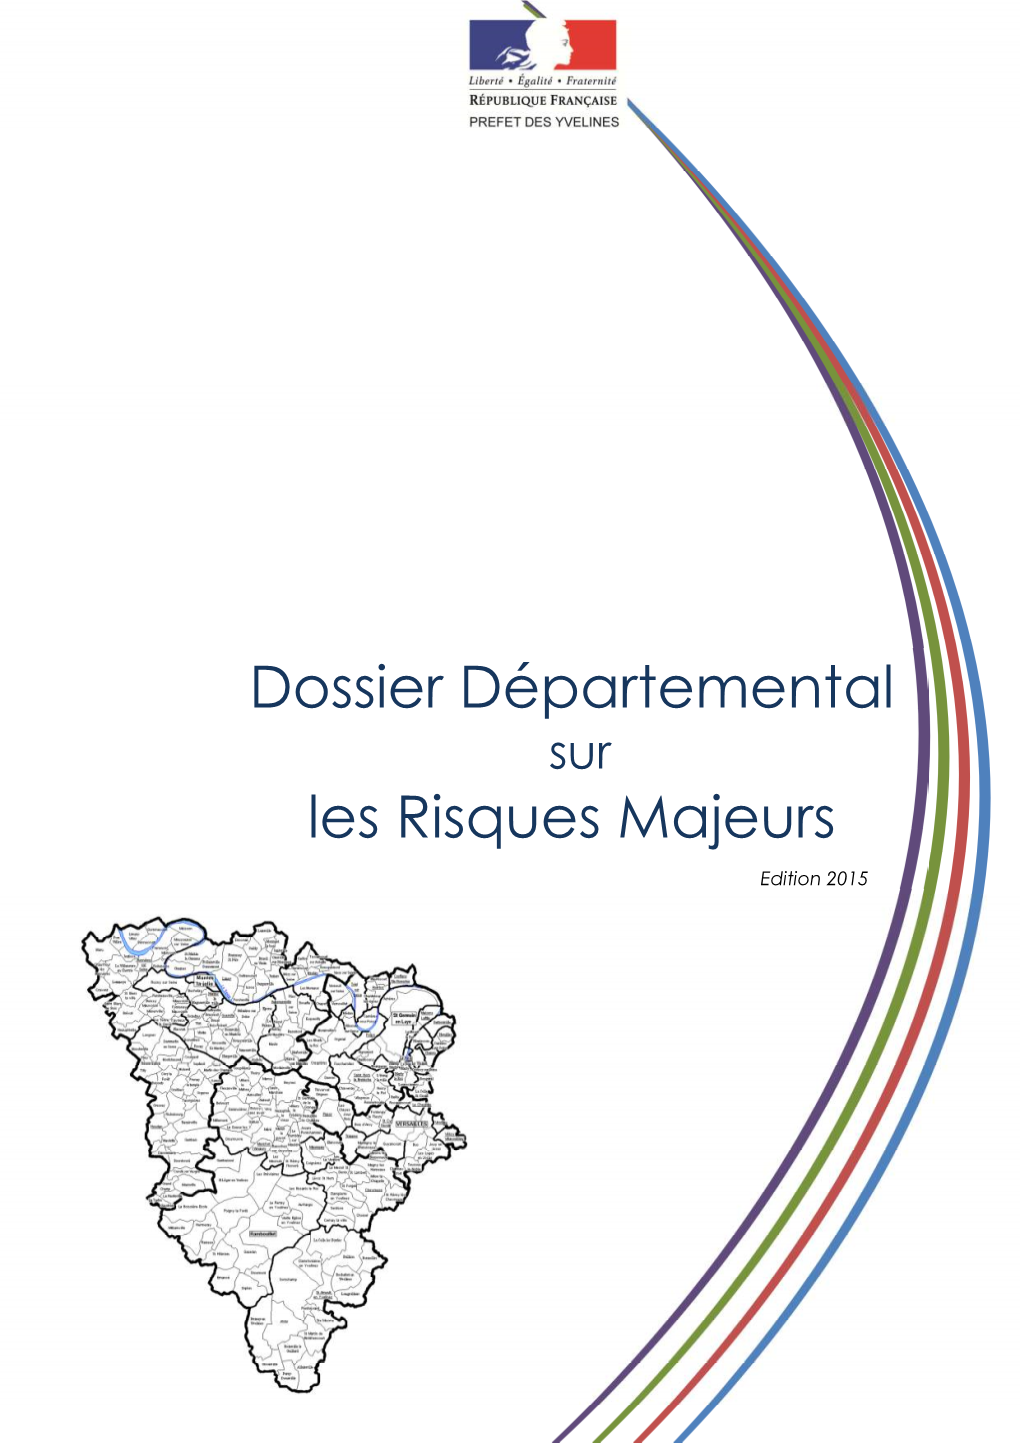 Le Dossier Départemental Des Risques Majeurs (DDRM) Recense, À Partir Des Travaux Réalisés Par L’Ensemble Des Services